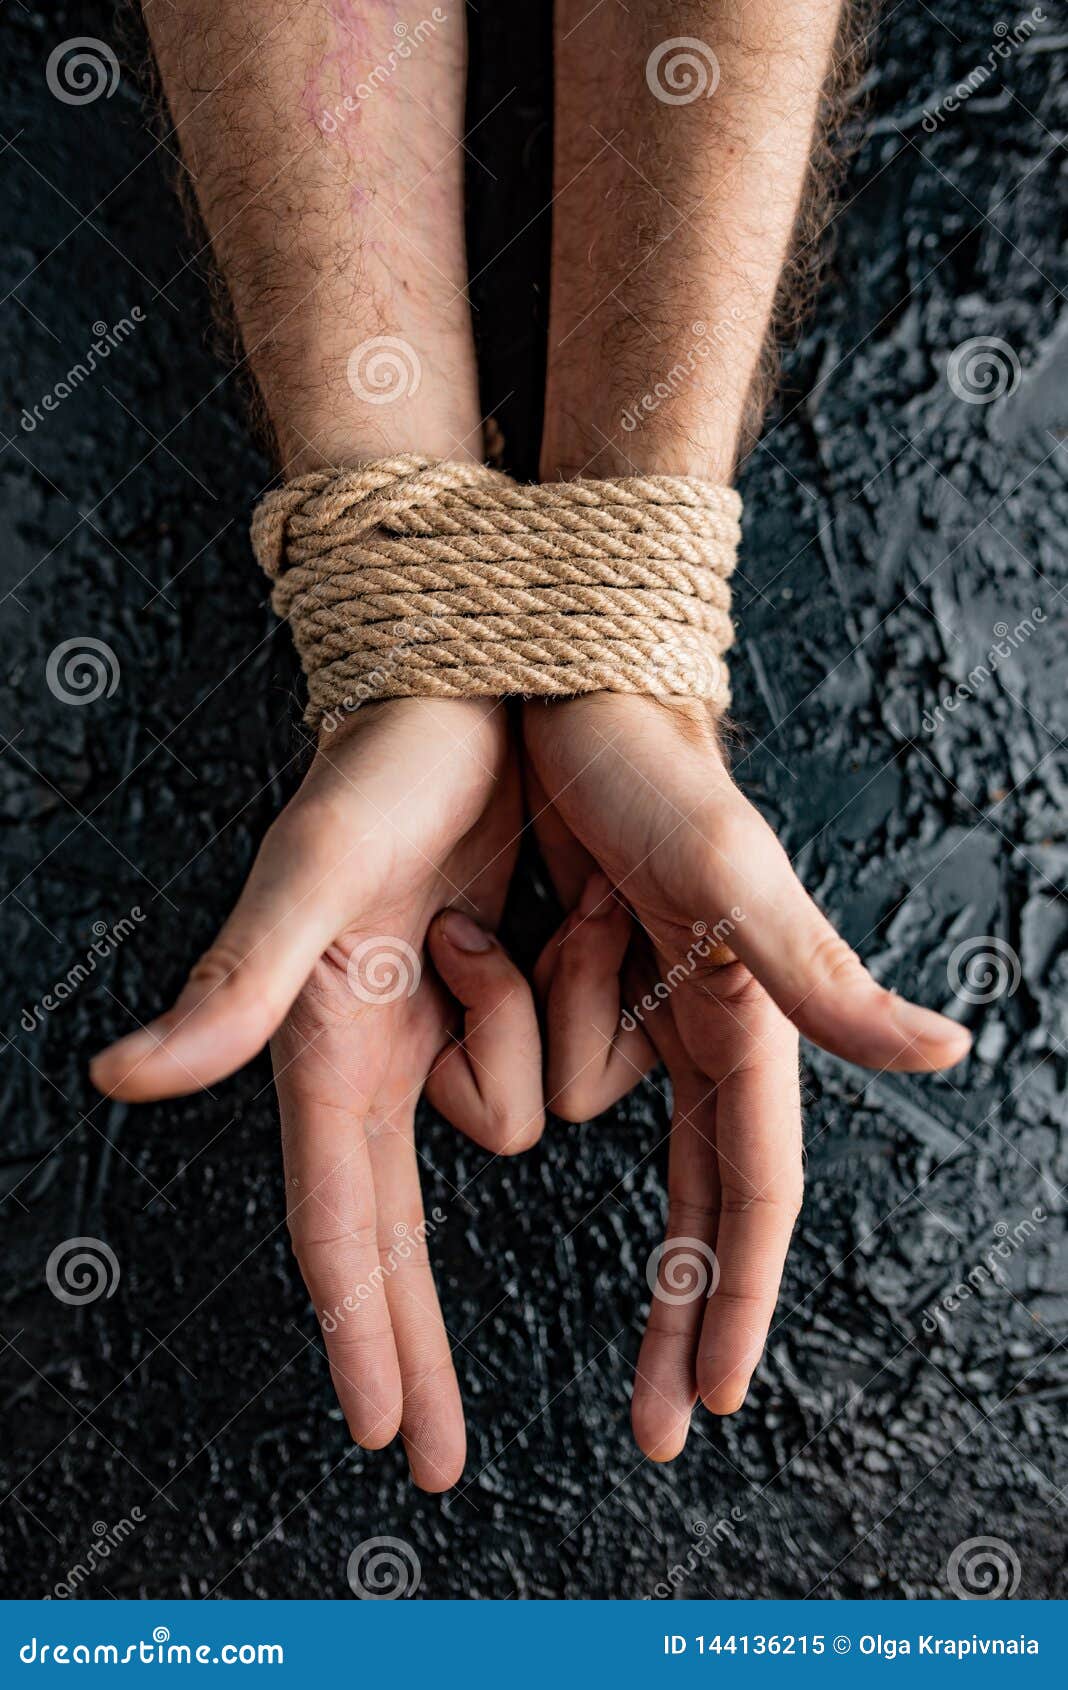 Связать руки мужику. Связанные мужские руки. Связать руки мужчине. Связанная мужская рука картинки. Как связать руки мужчине.